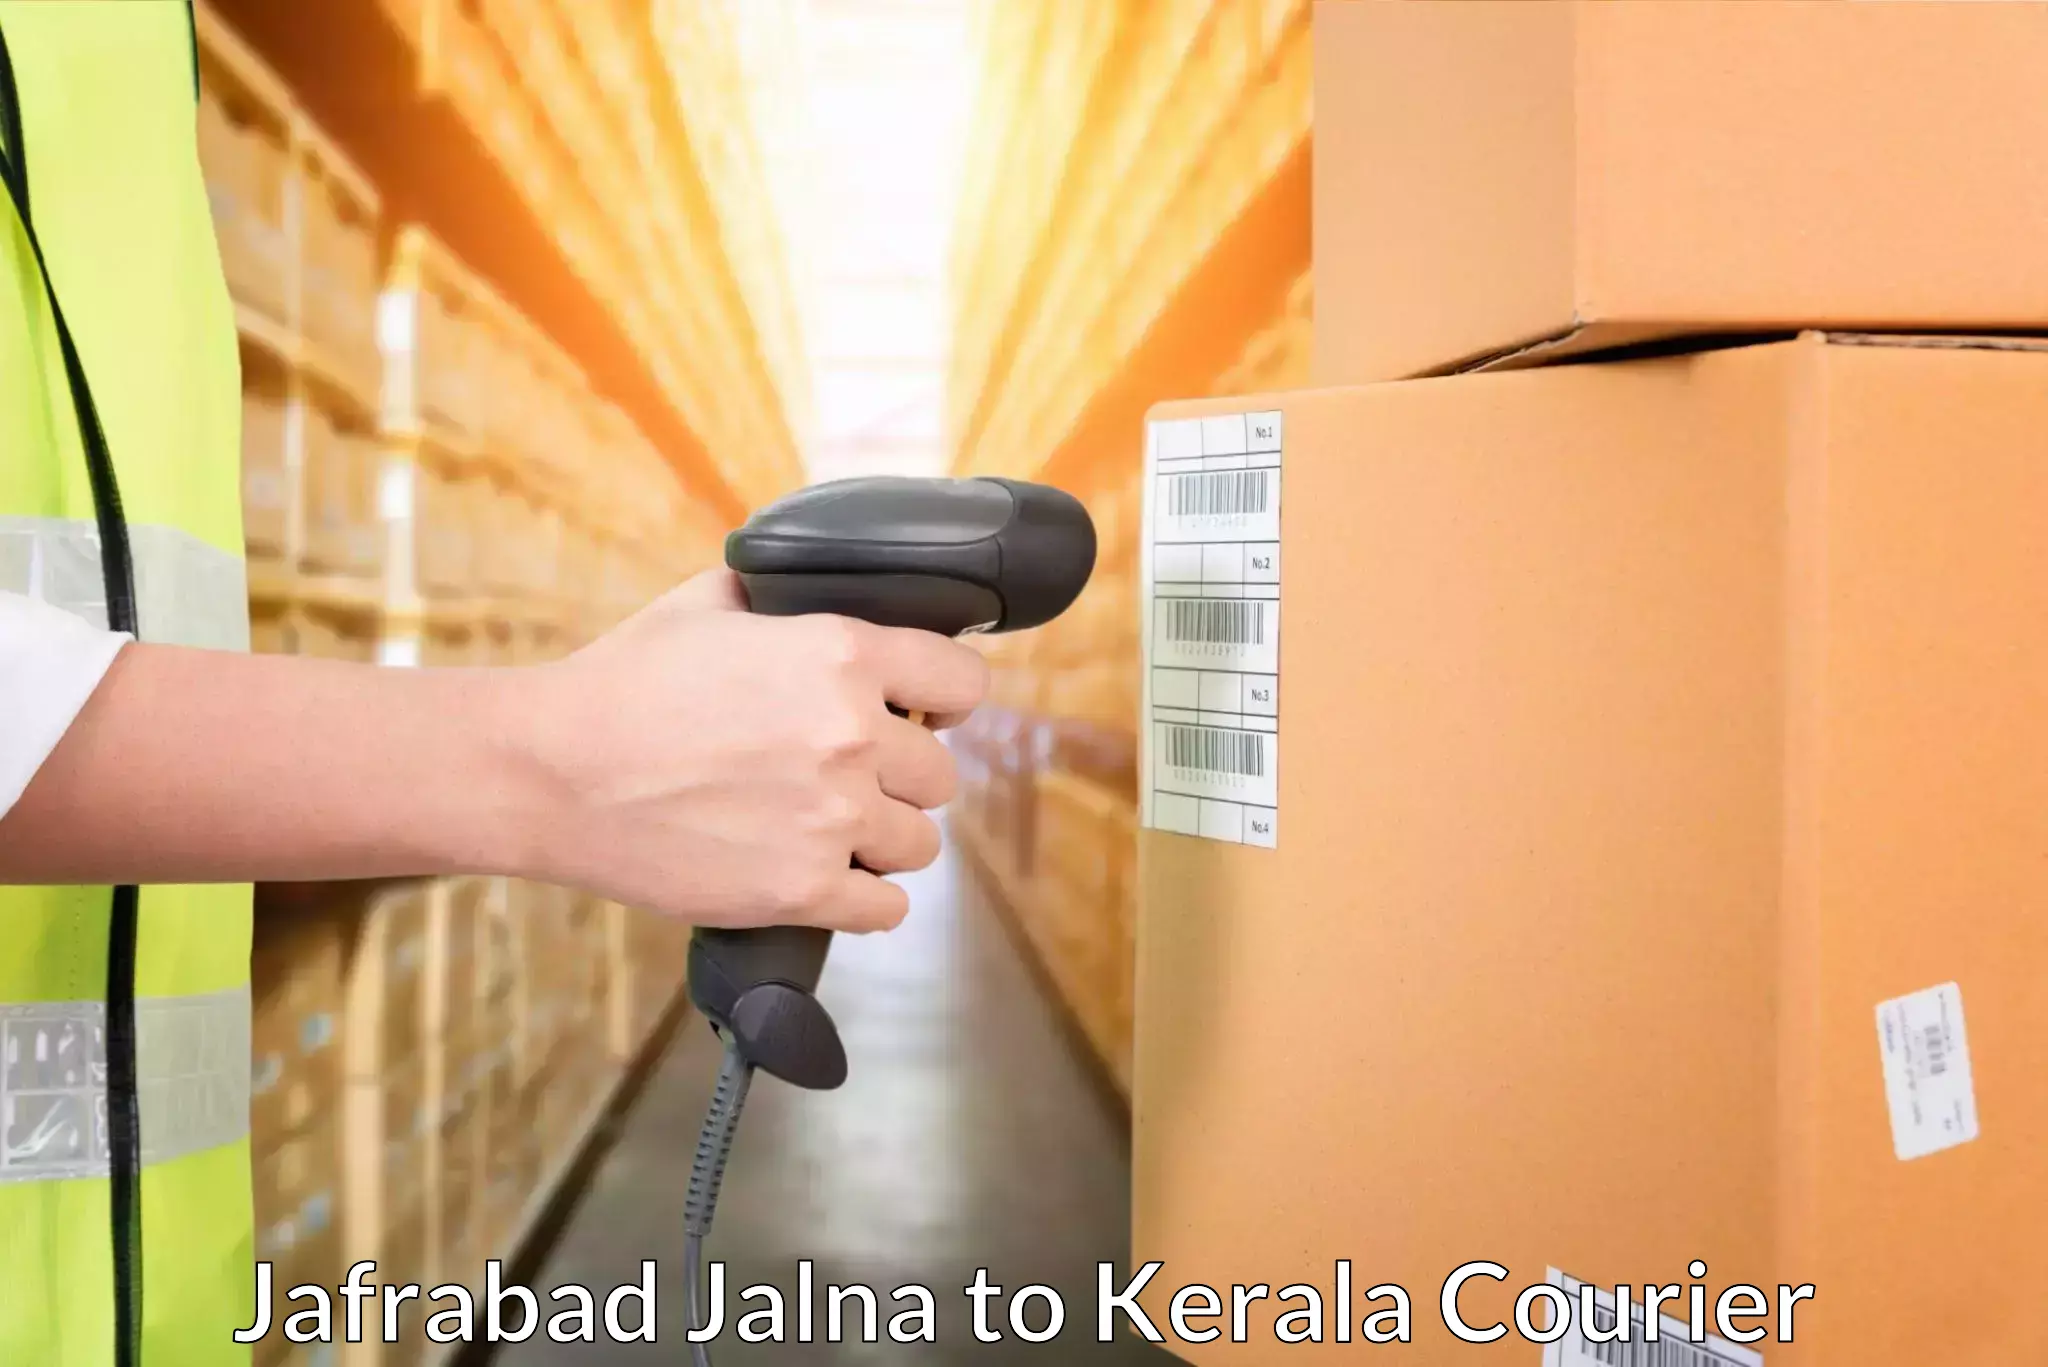 Affordable parcel service Jafrabad Jalna to Kuchi